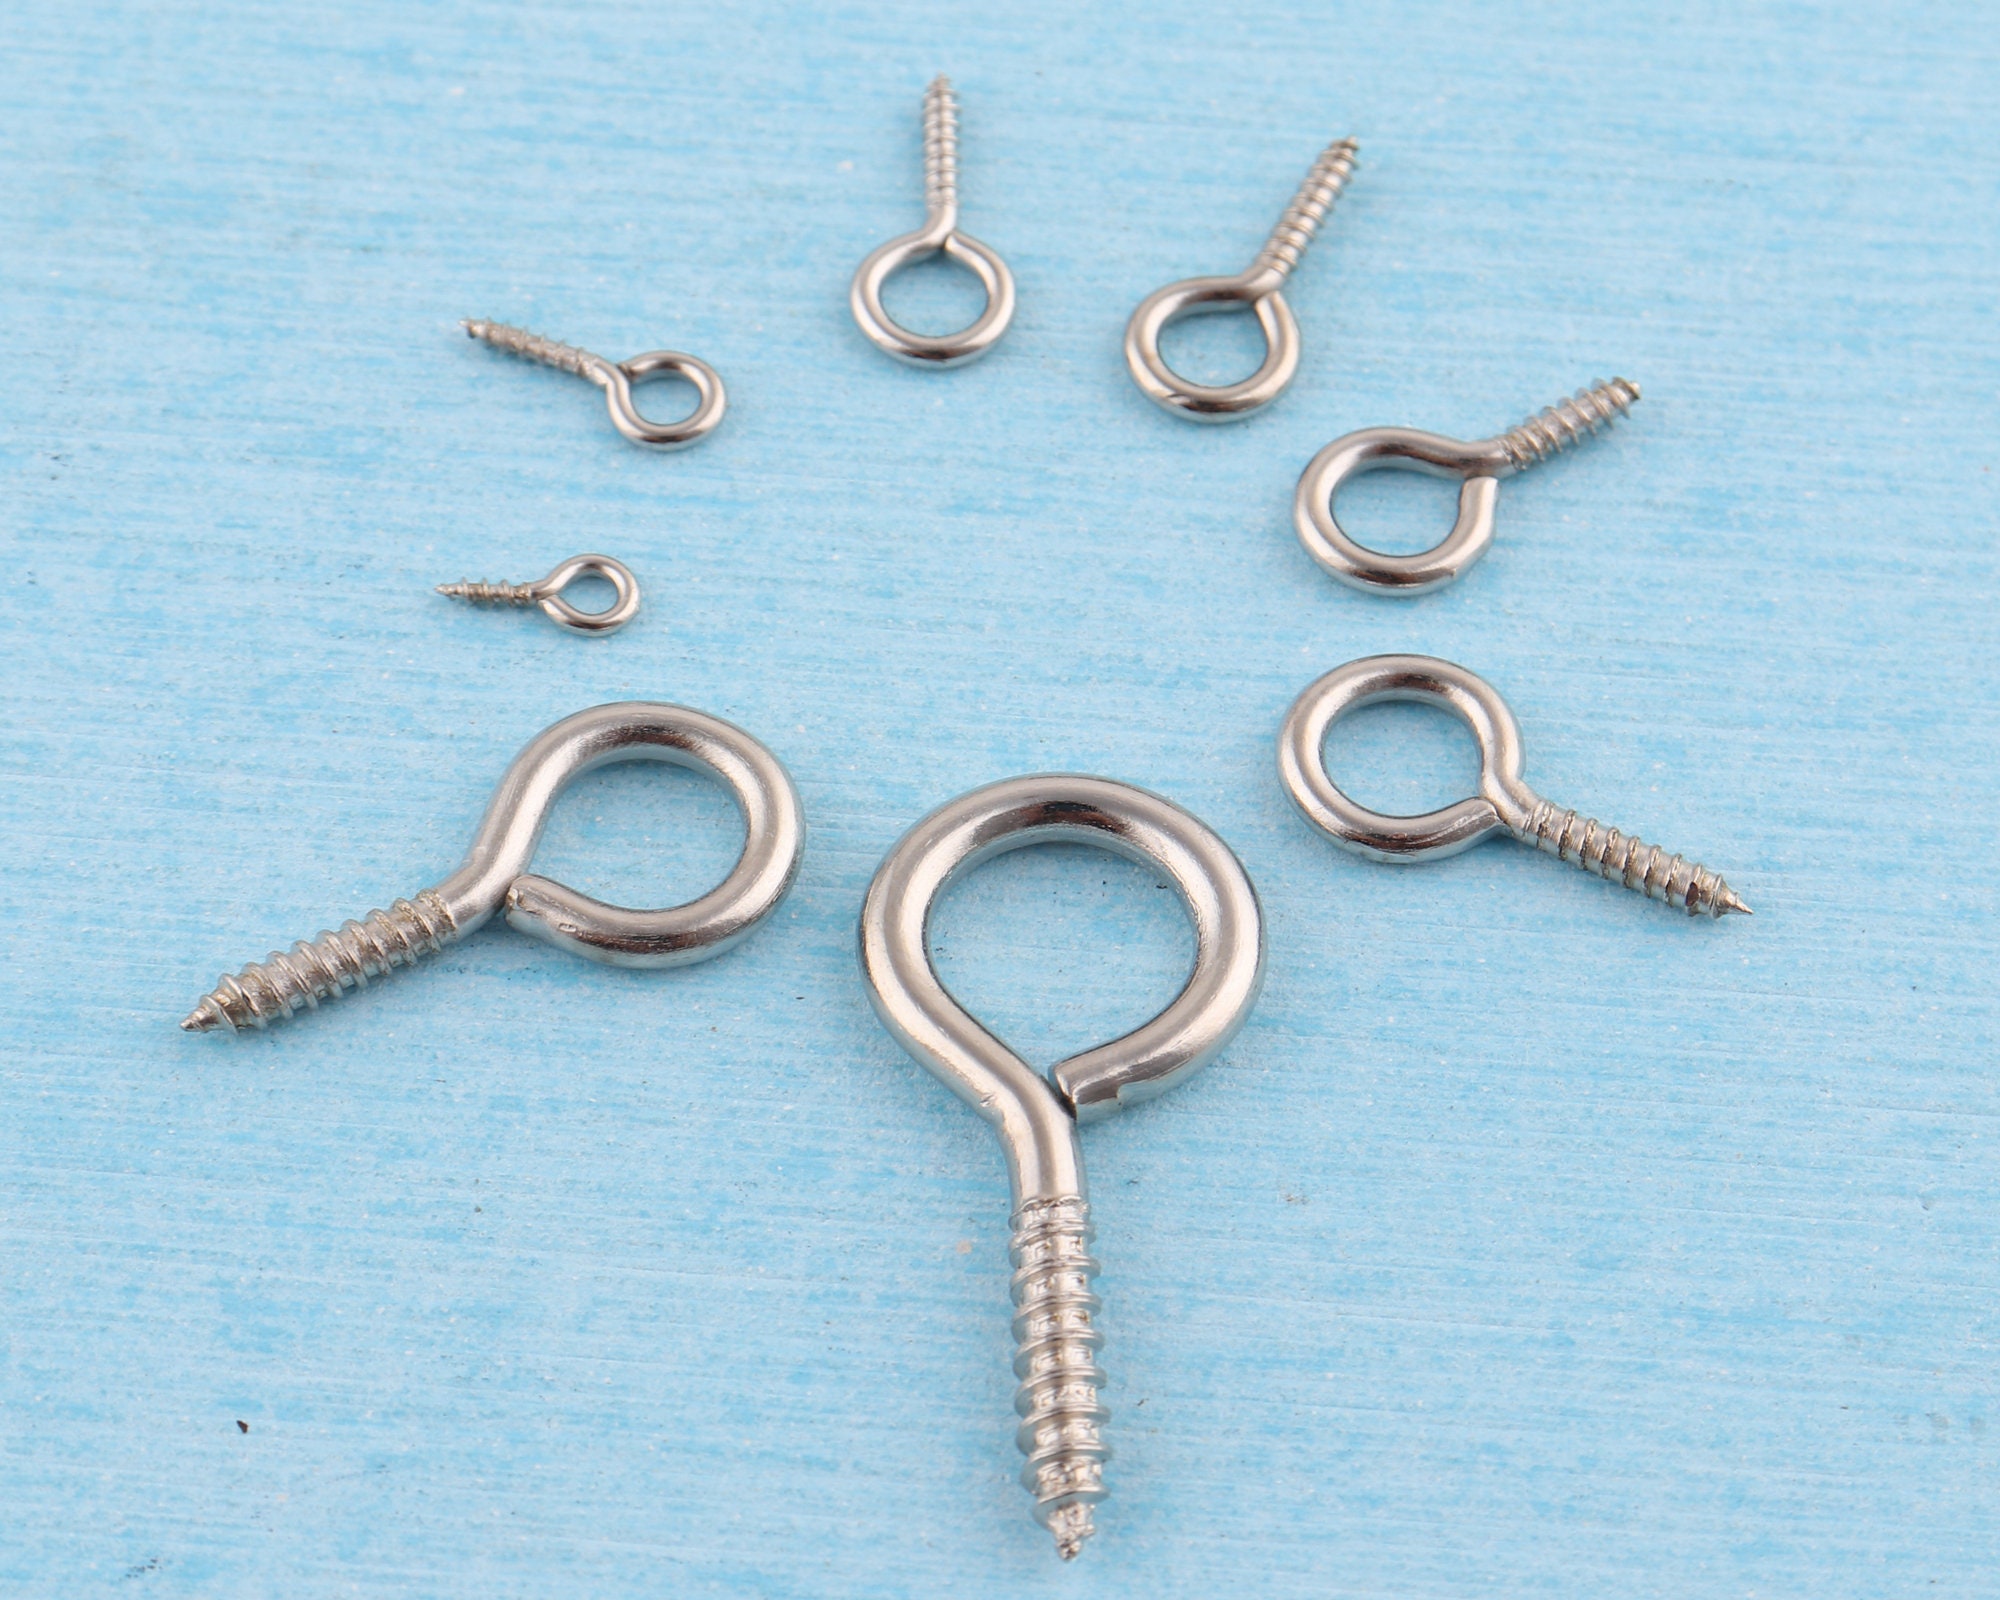 Screw Eye Hook / Screw Eye Bail / Screw Eye Pin / Screw Hook Bails (5mm x  10mm / 50pcs / Silver) Jewelry Findings Charm Making F096